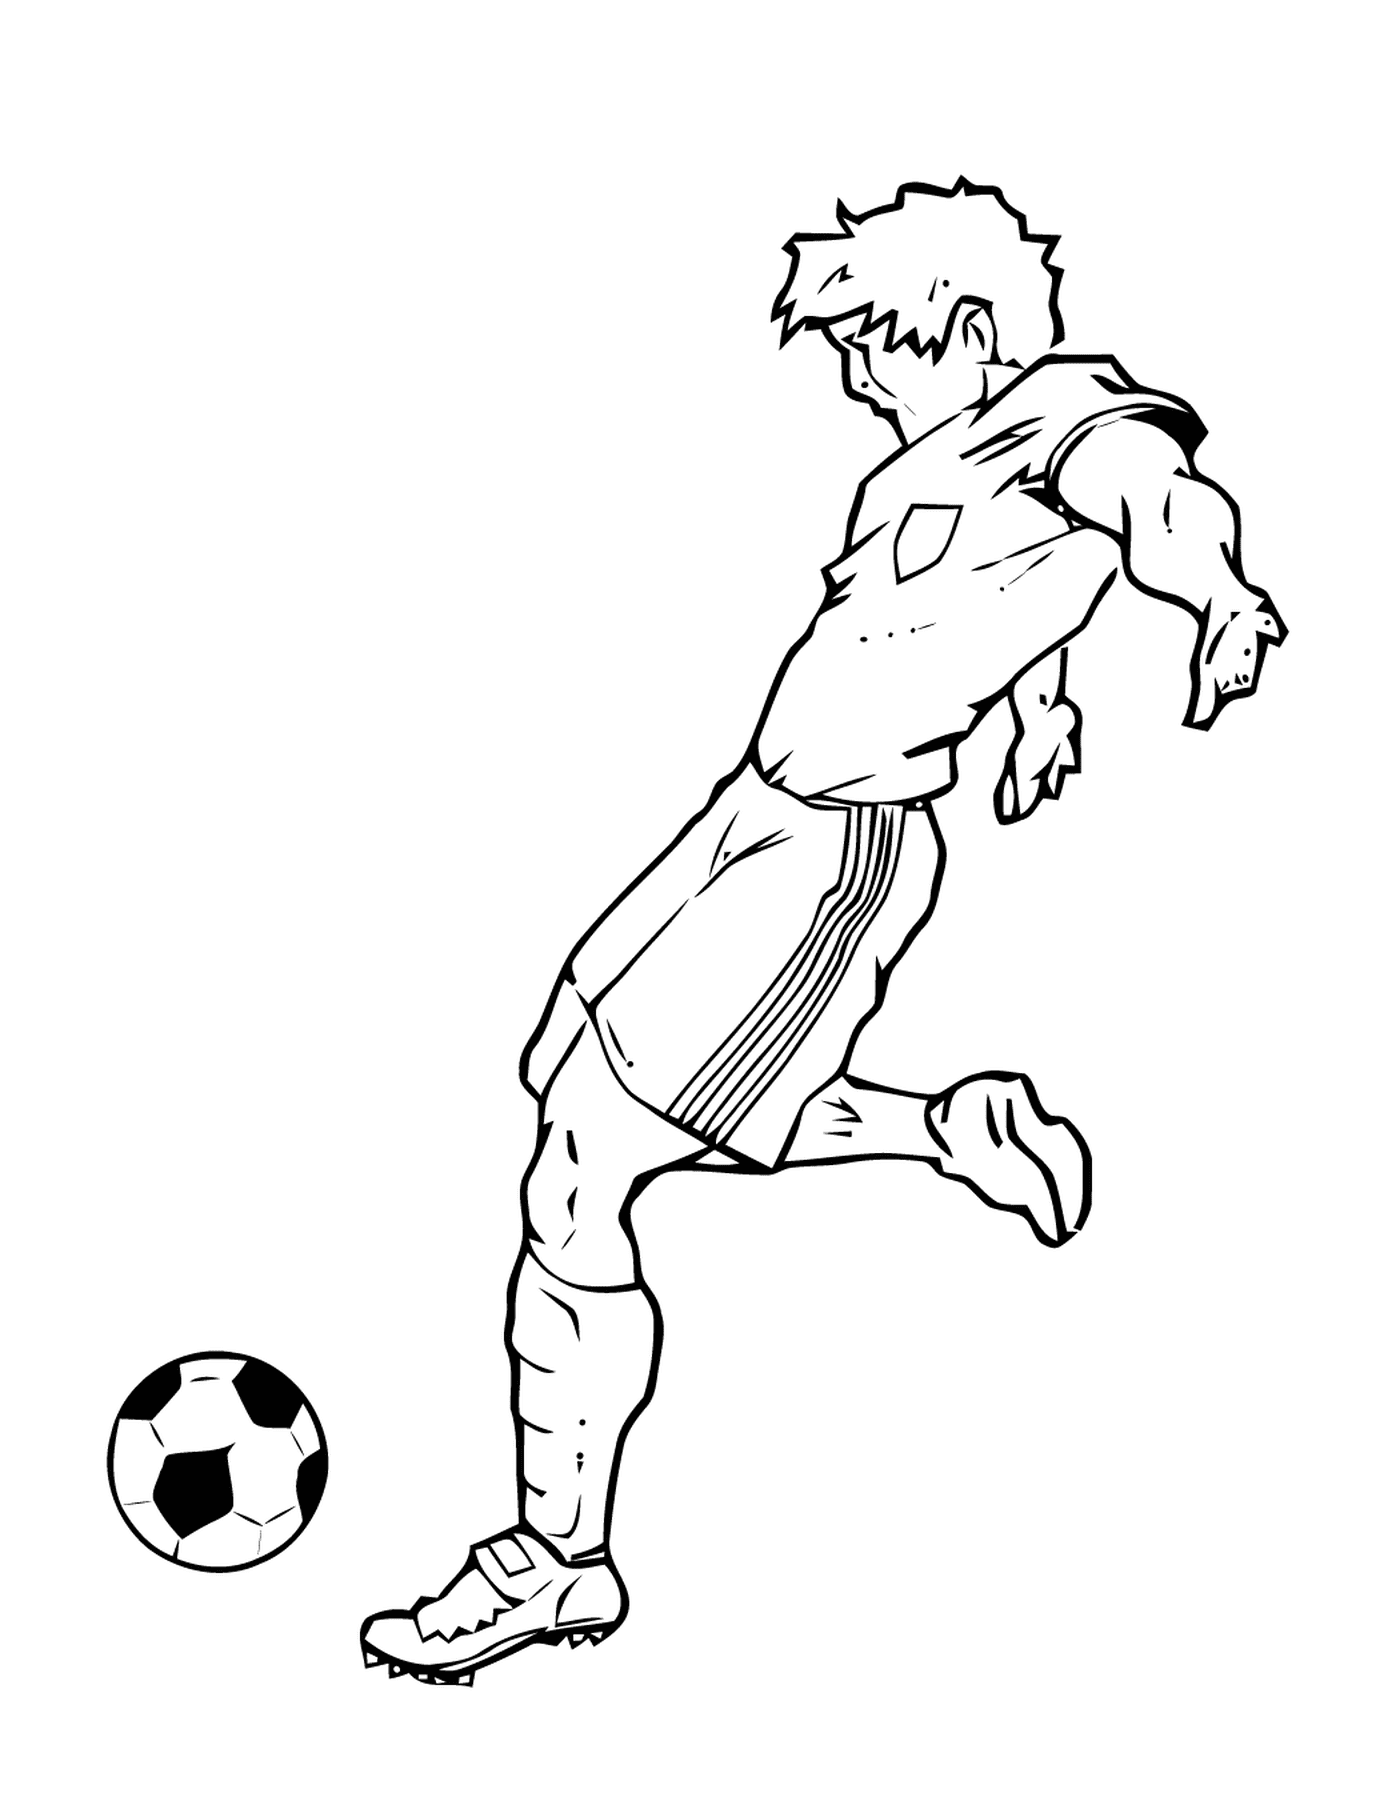  Sport, football player hitting a ball 